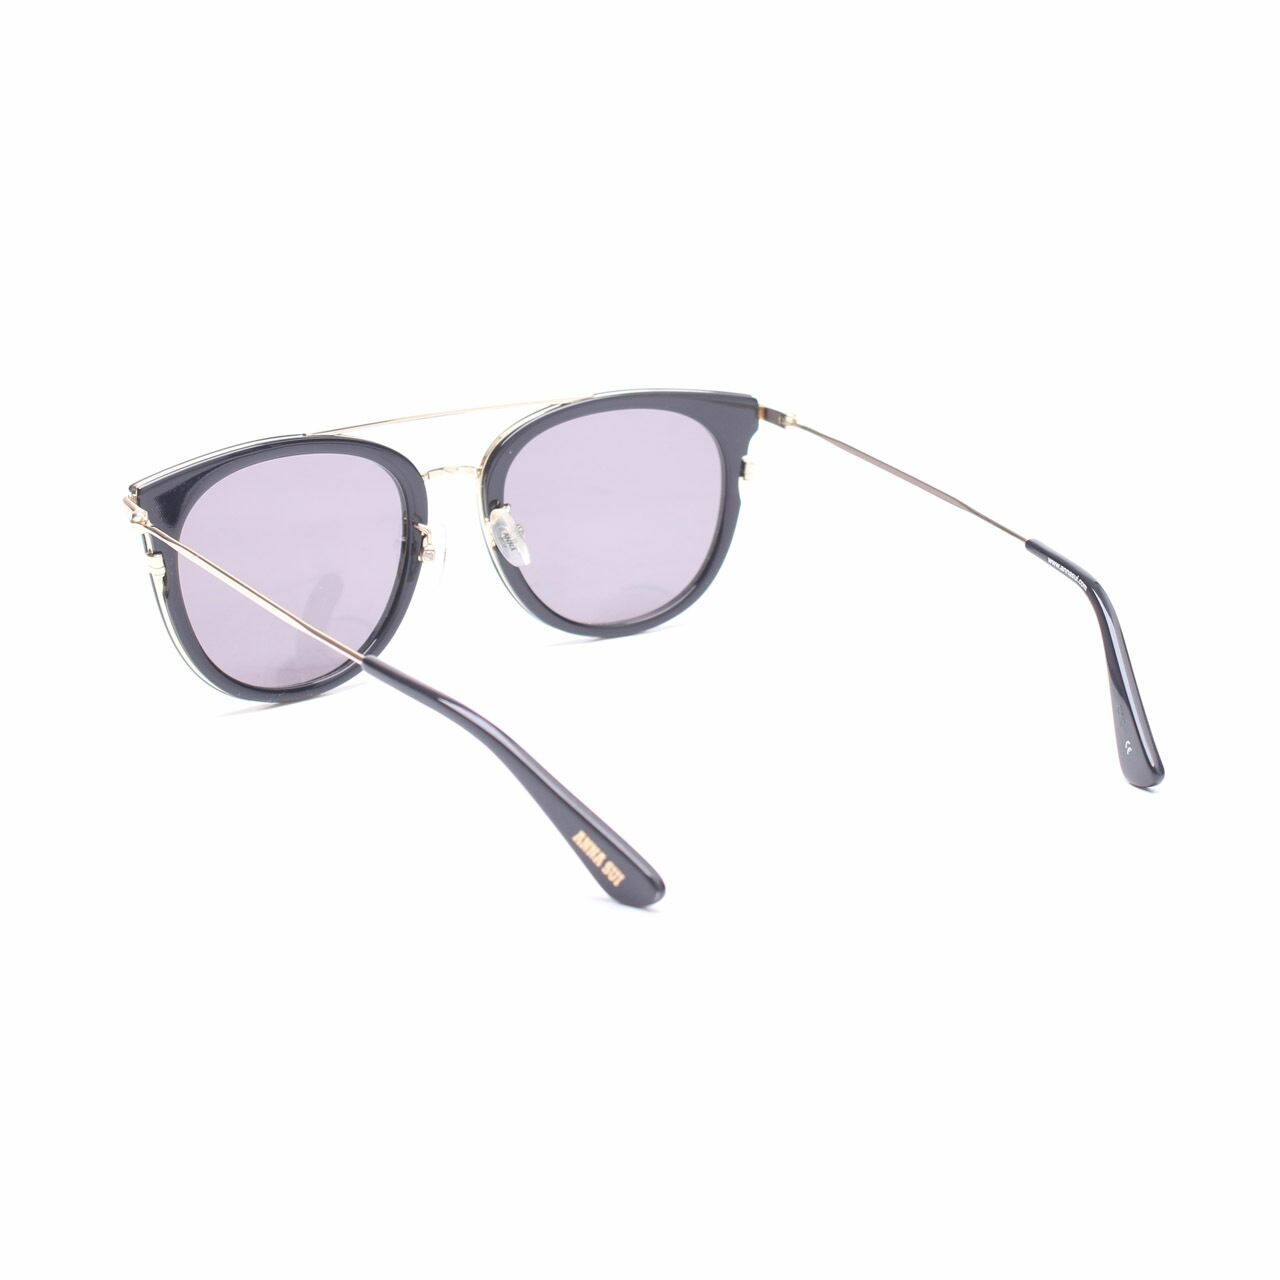 Anna Sui Black Sunglasses